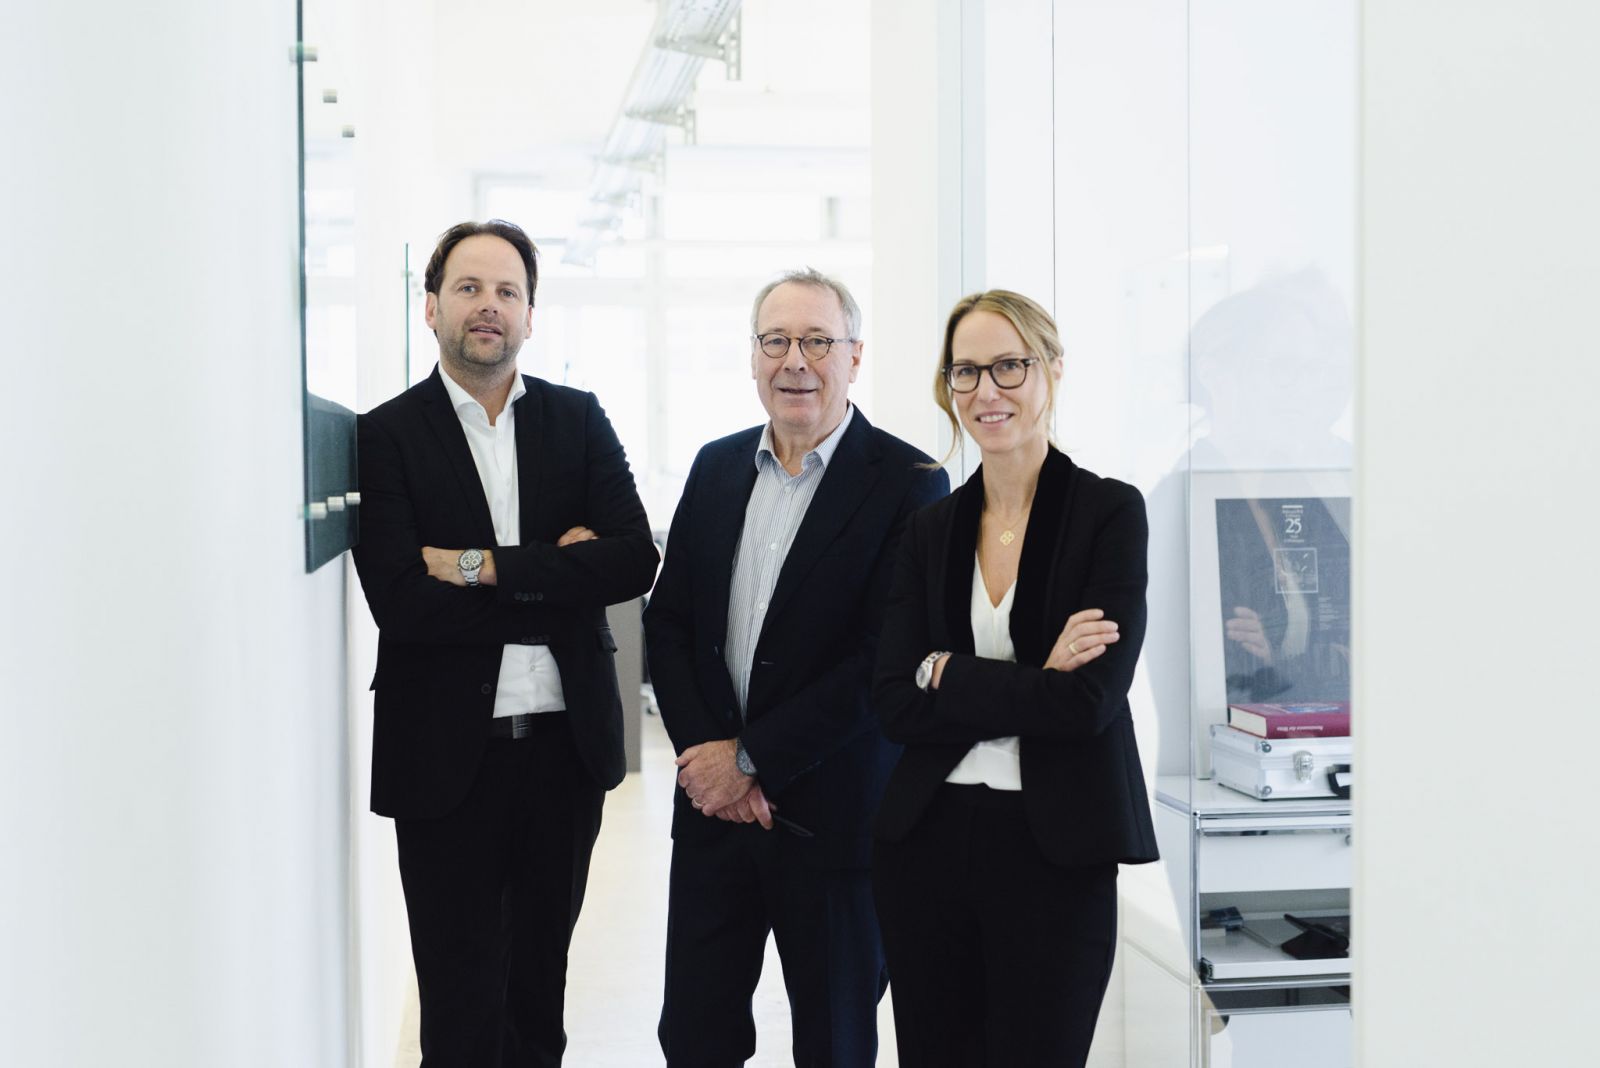 Geschäftsleitung von GBP Architekten (v.l.n.r.): Thomas Wagenknecht, Gunter Bürk und Nicola Medrow-Bürk © GBP Architekten, Foto: Ailine Liefeld